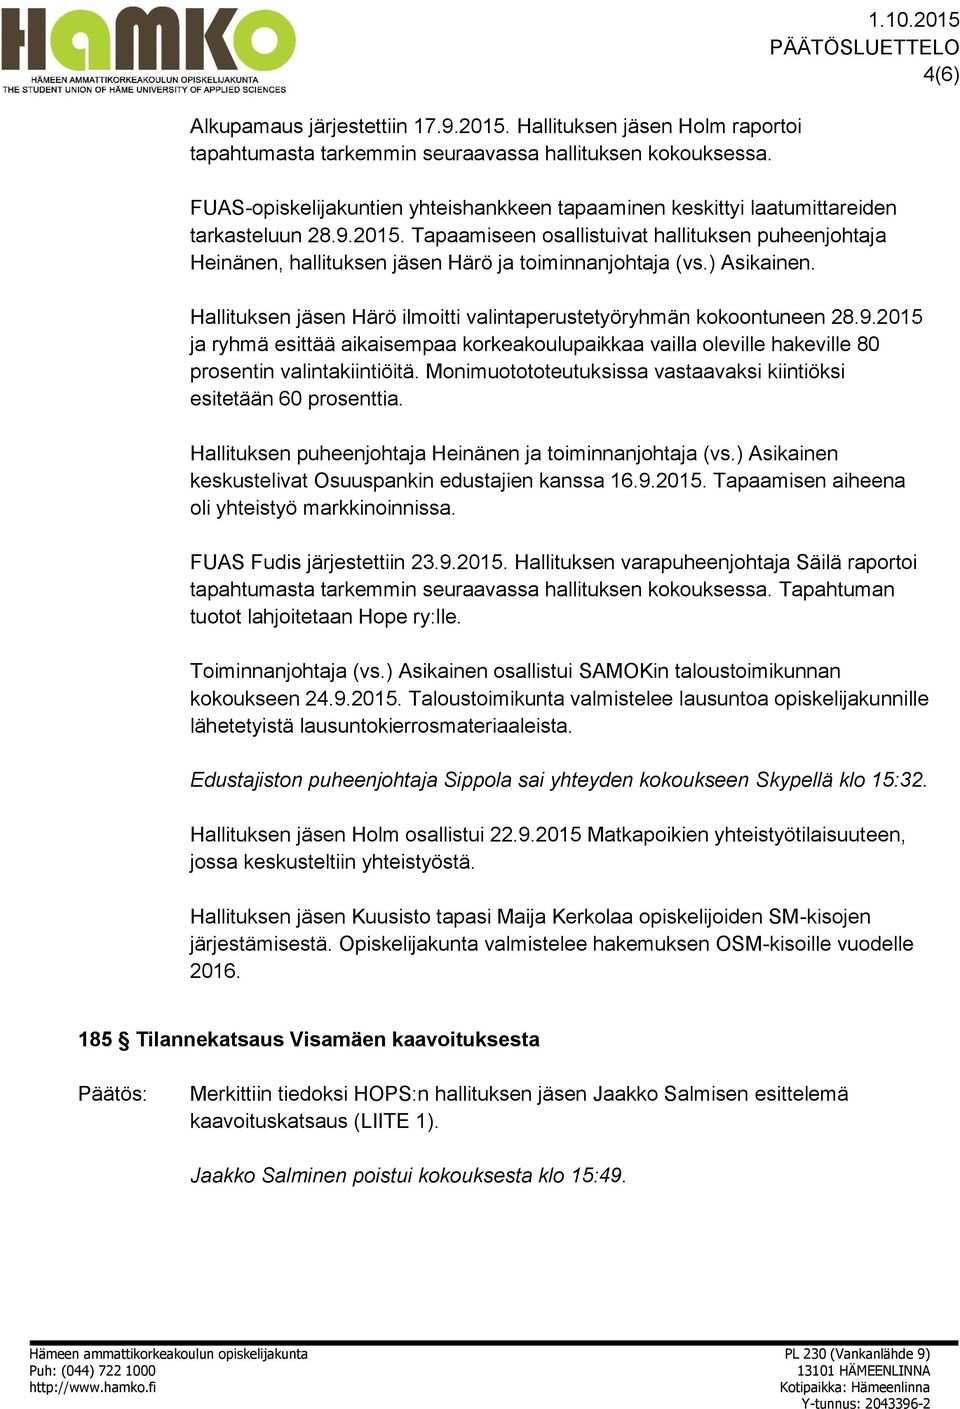 ) Asikainen. Hallituksen jäsen Härö ilmoitti valintaperustetyöryhmän kokoontuneen 28.9.2015 ja ryhmä esittää aikaisempaa korkeakoulupaikkaa vailla oleville hakeville 80 prosentin valintakiintiöitä.